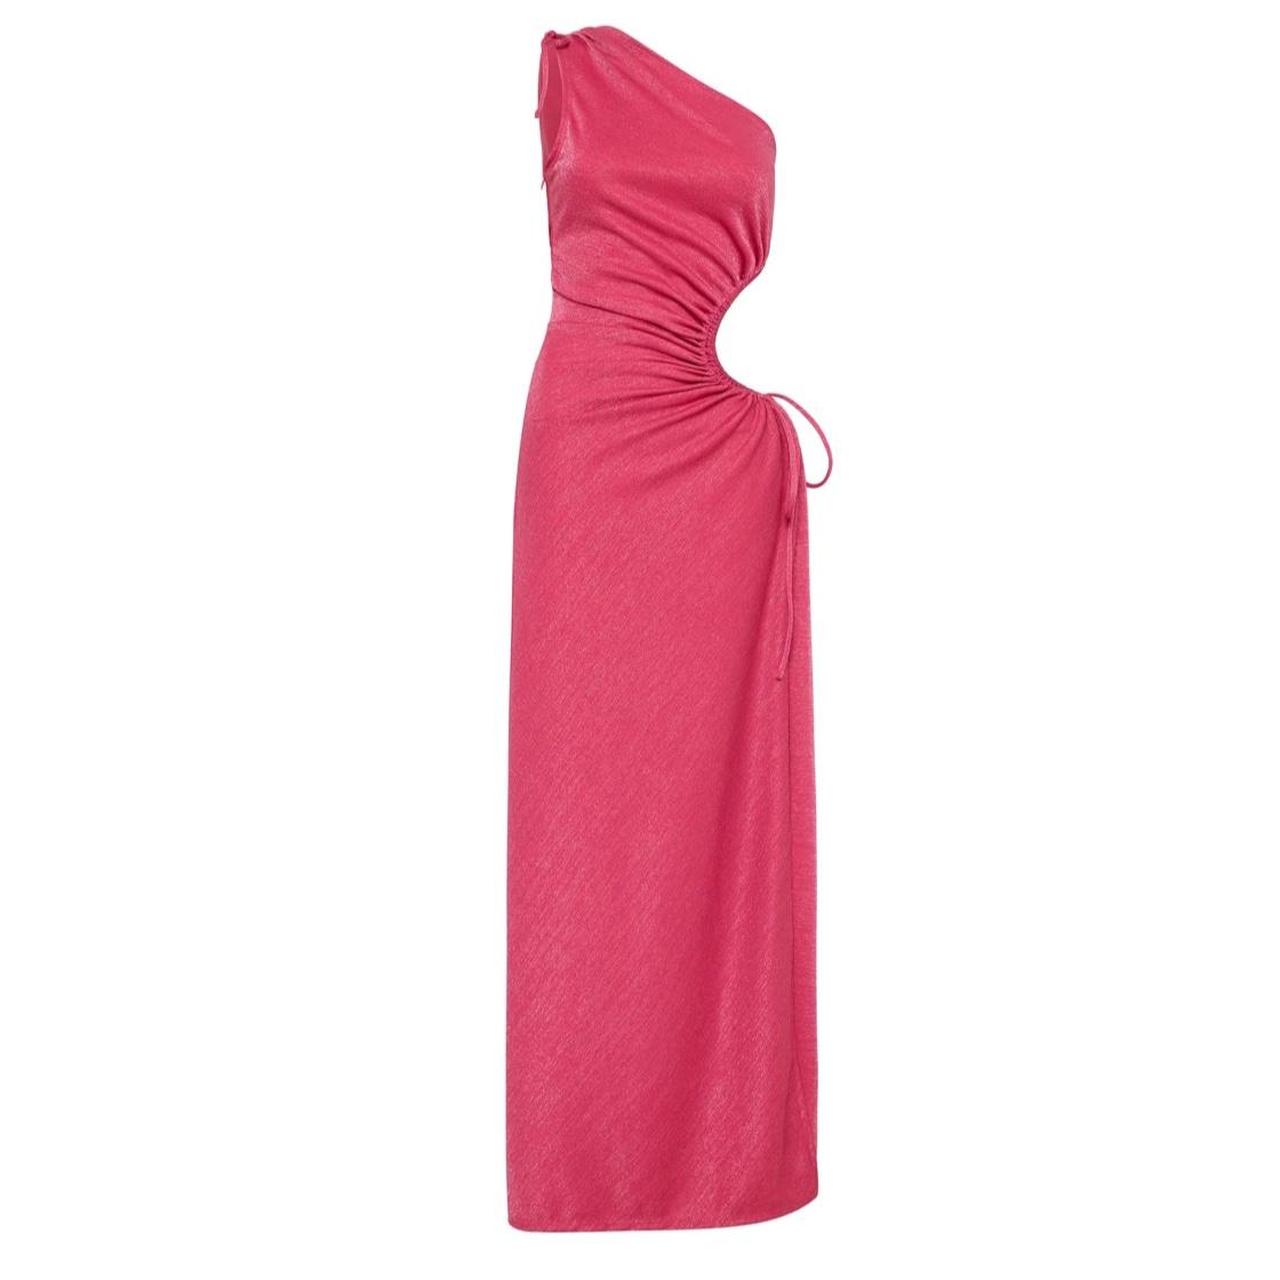 SONYA MODA - NOUR pink shimmer maxi dress Selling or... - Depop